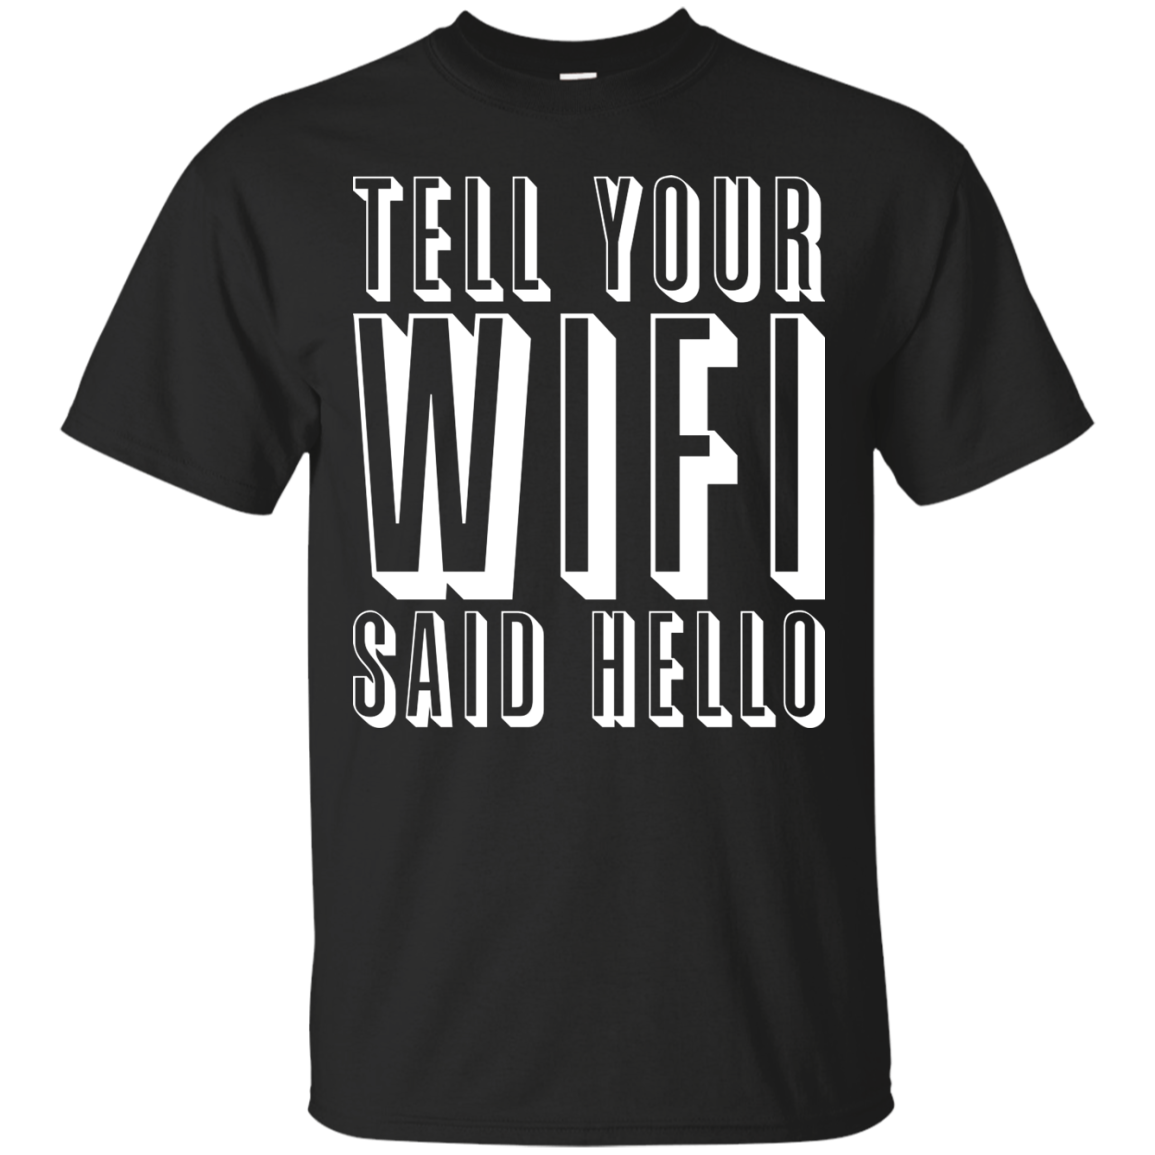 Dile a tu Wifi que diga hola